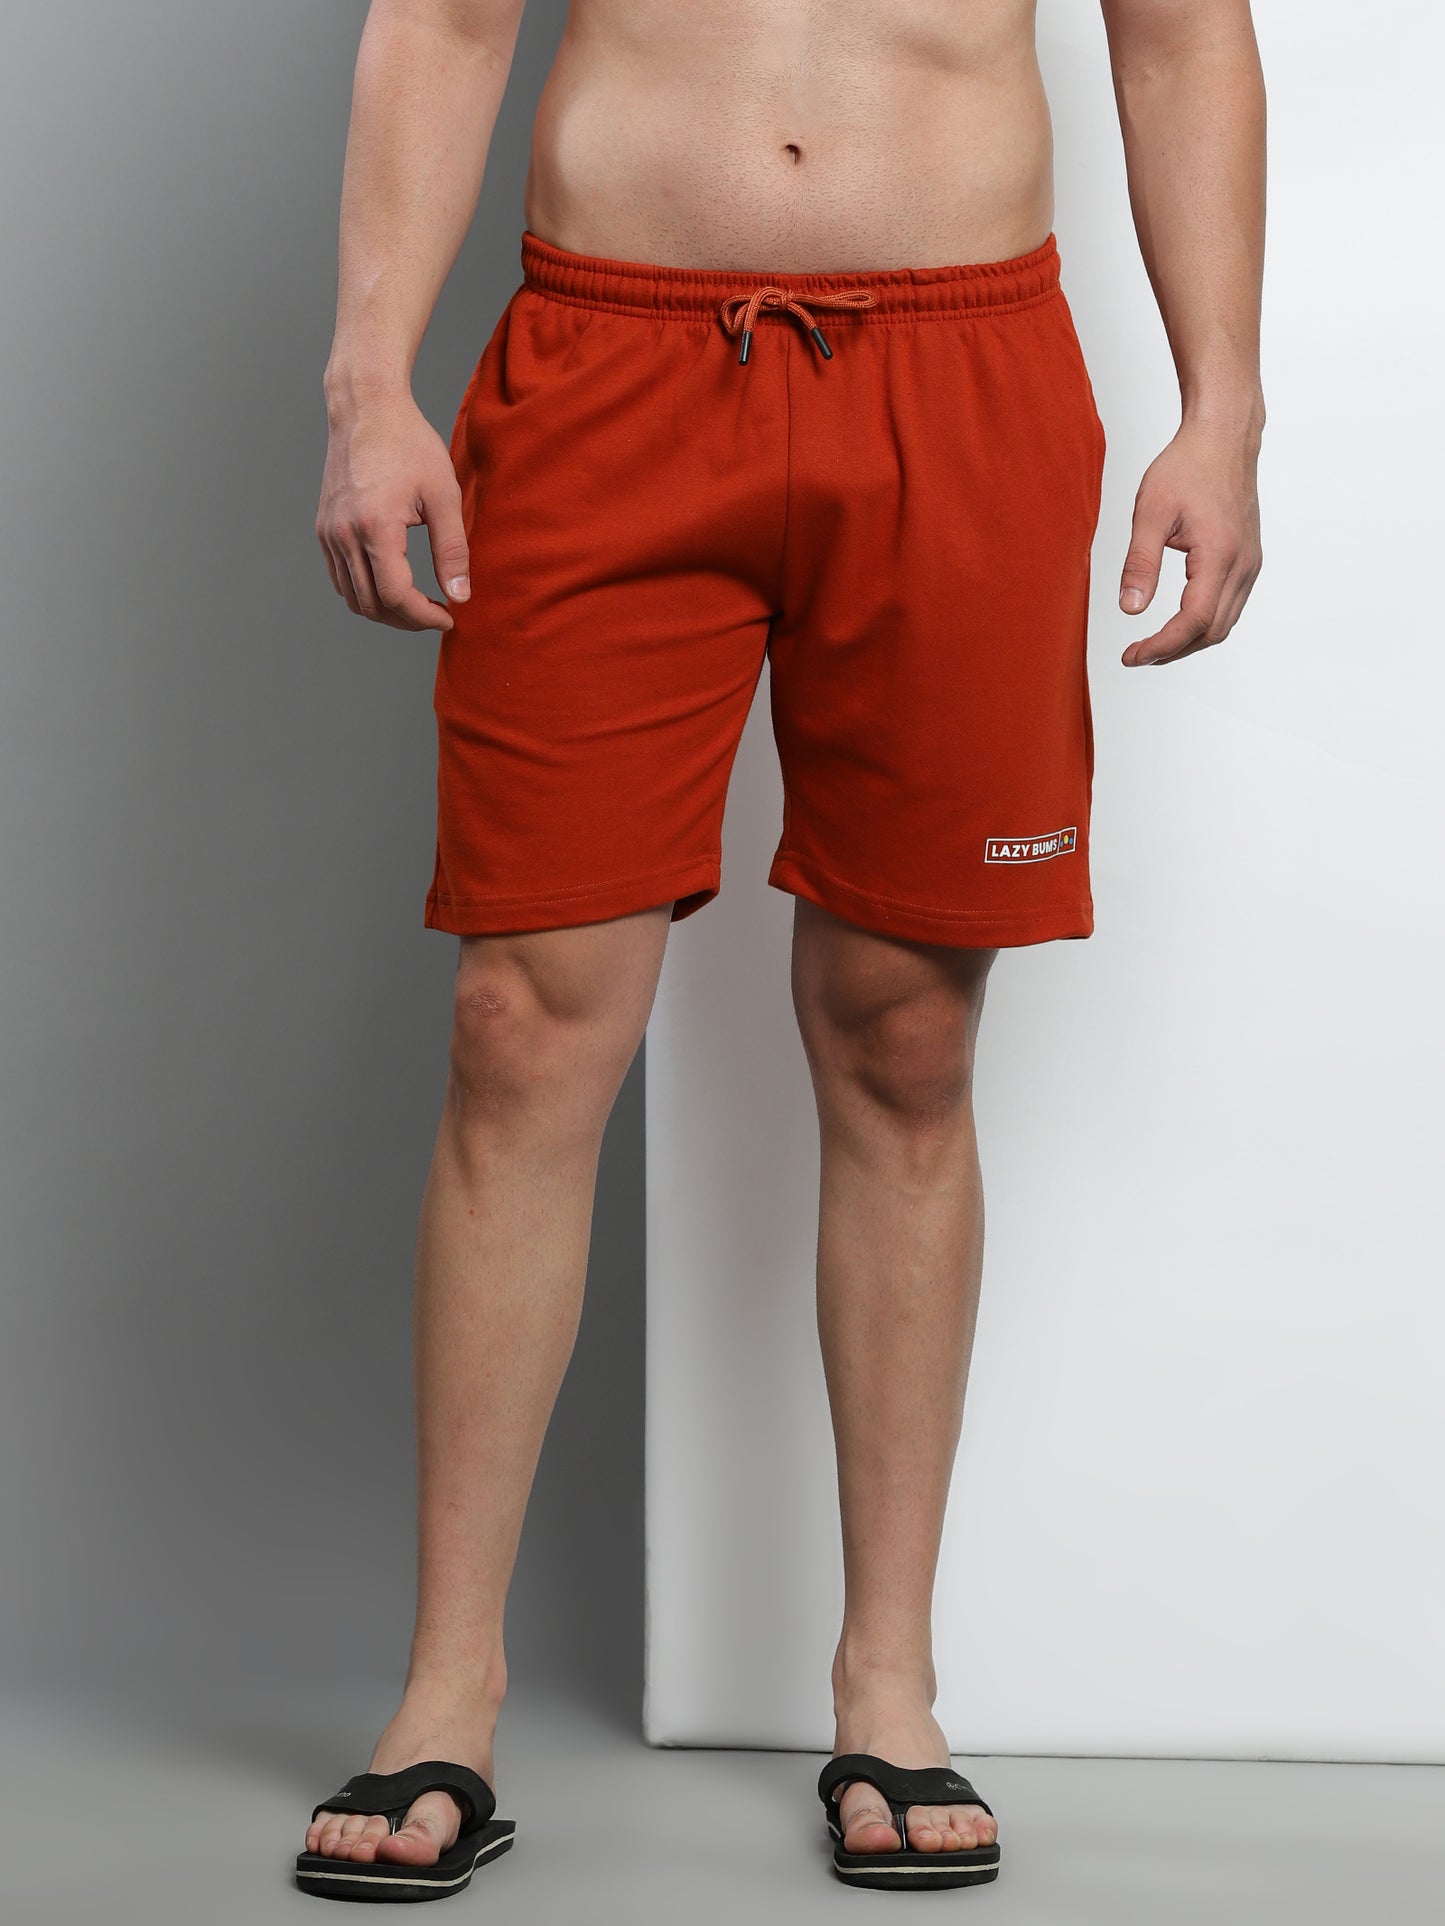 Rust Orange - Laid Back Shorts